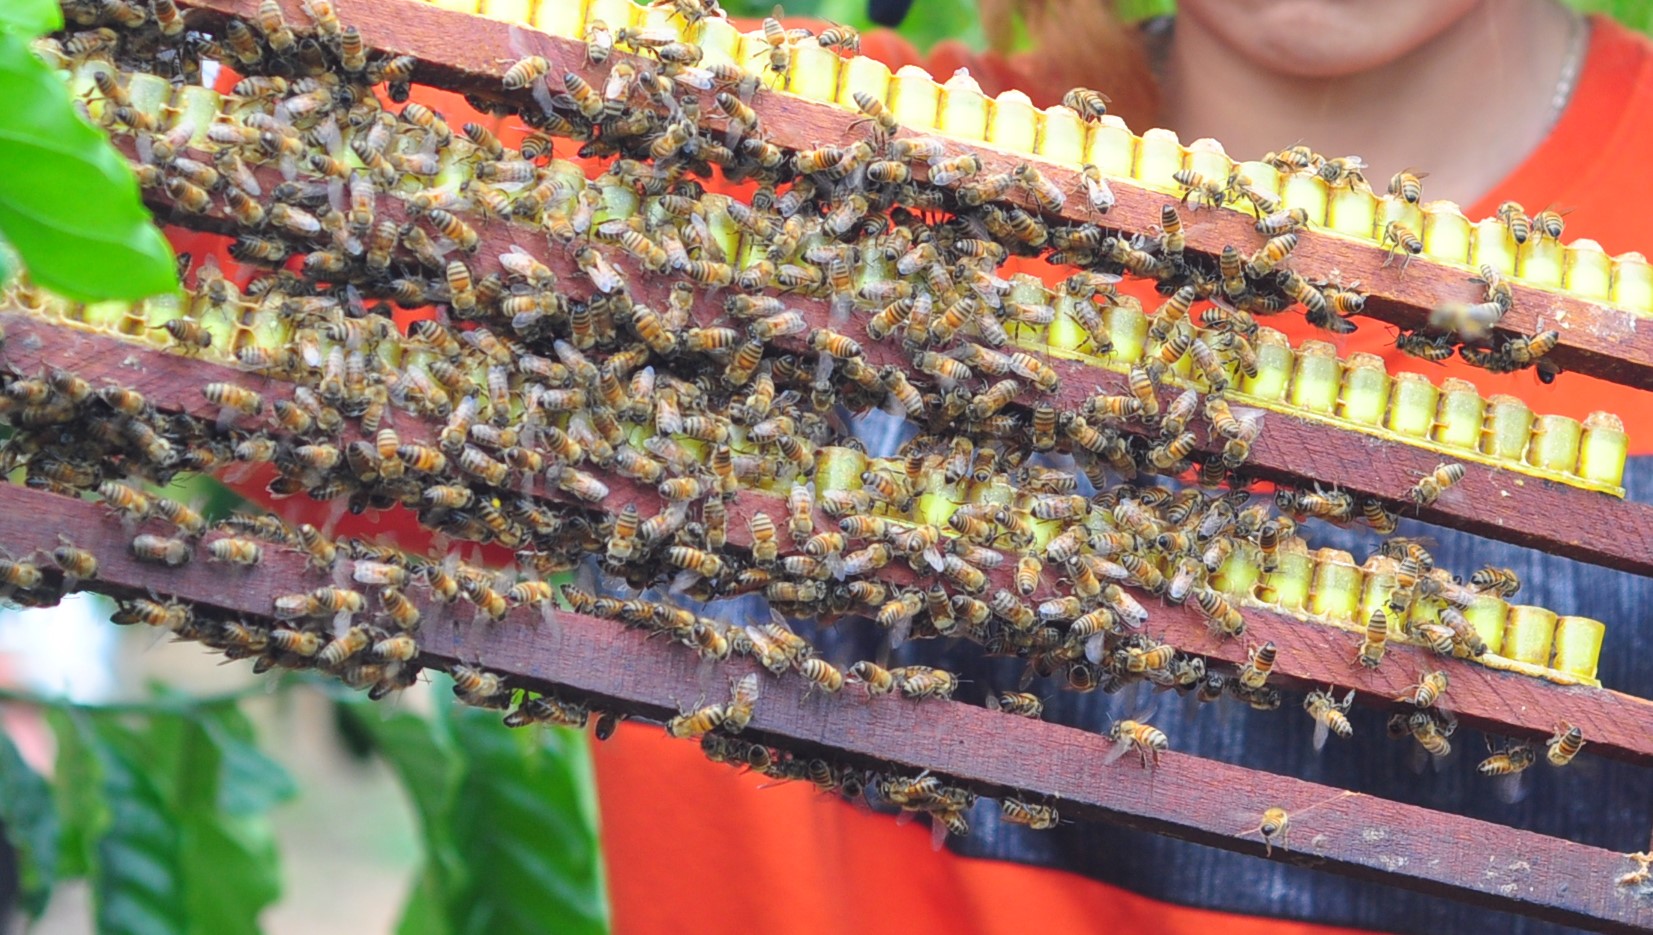 Chồng người Kinh, vợ người Cil nuôi ong an toàn sinh học, kiếm hơn trăm triệu mỗi năm - Ảnh 4.